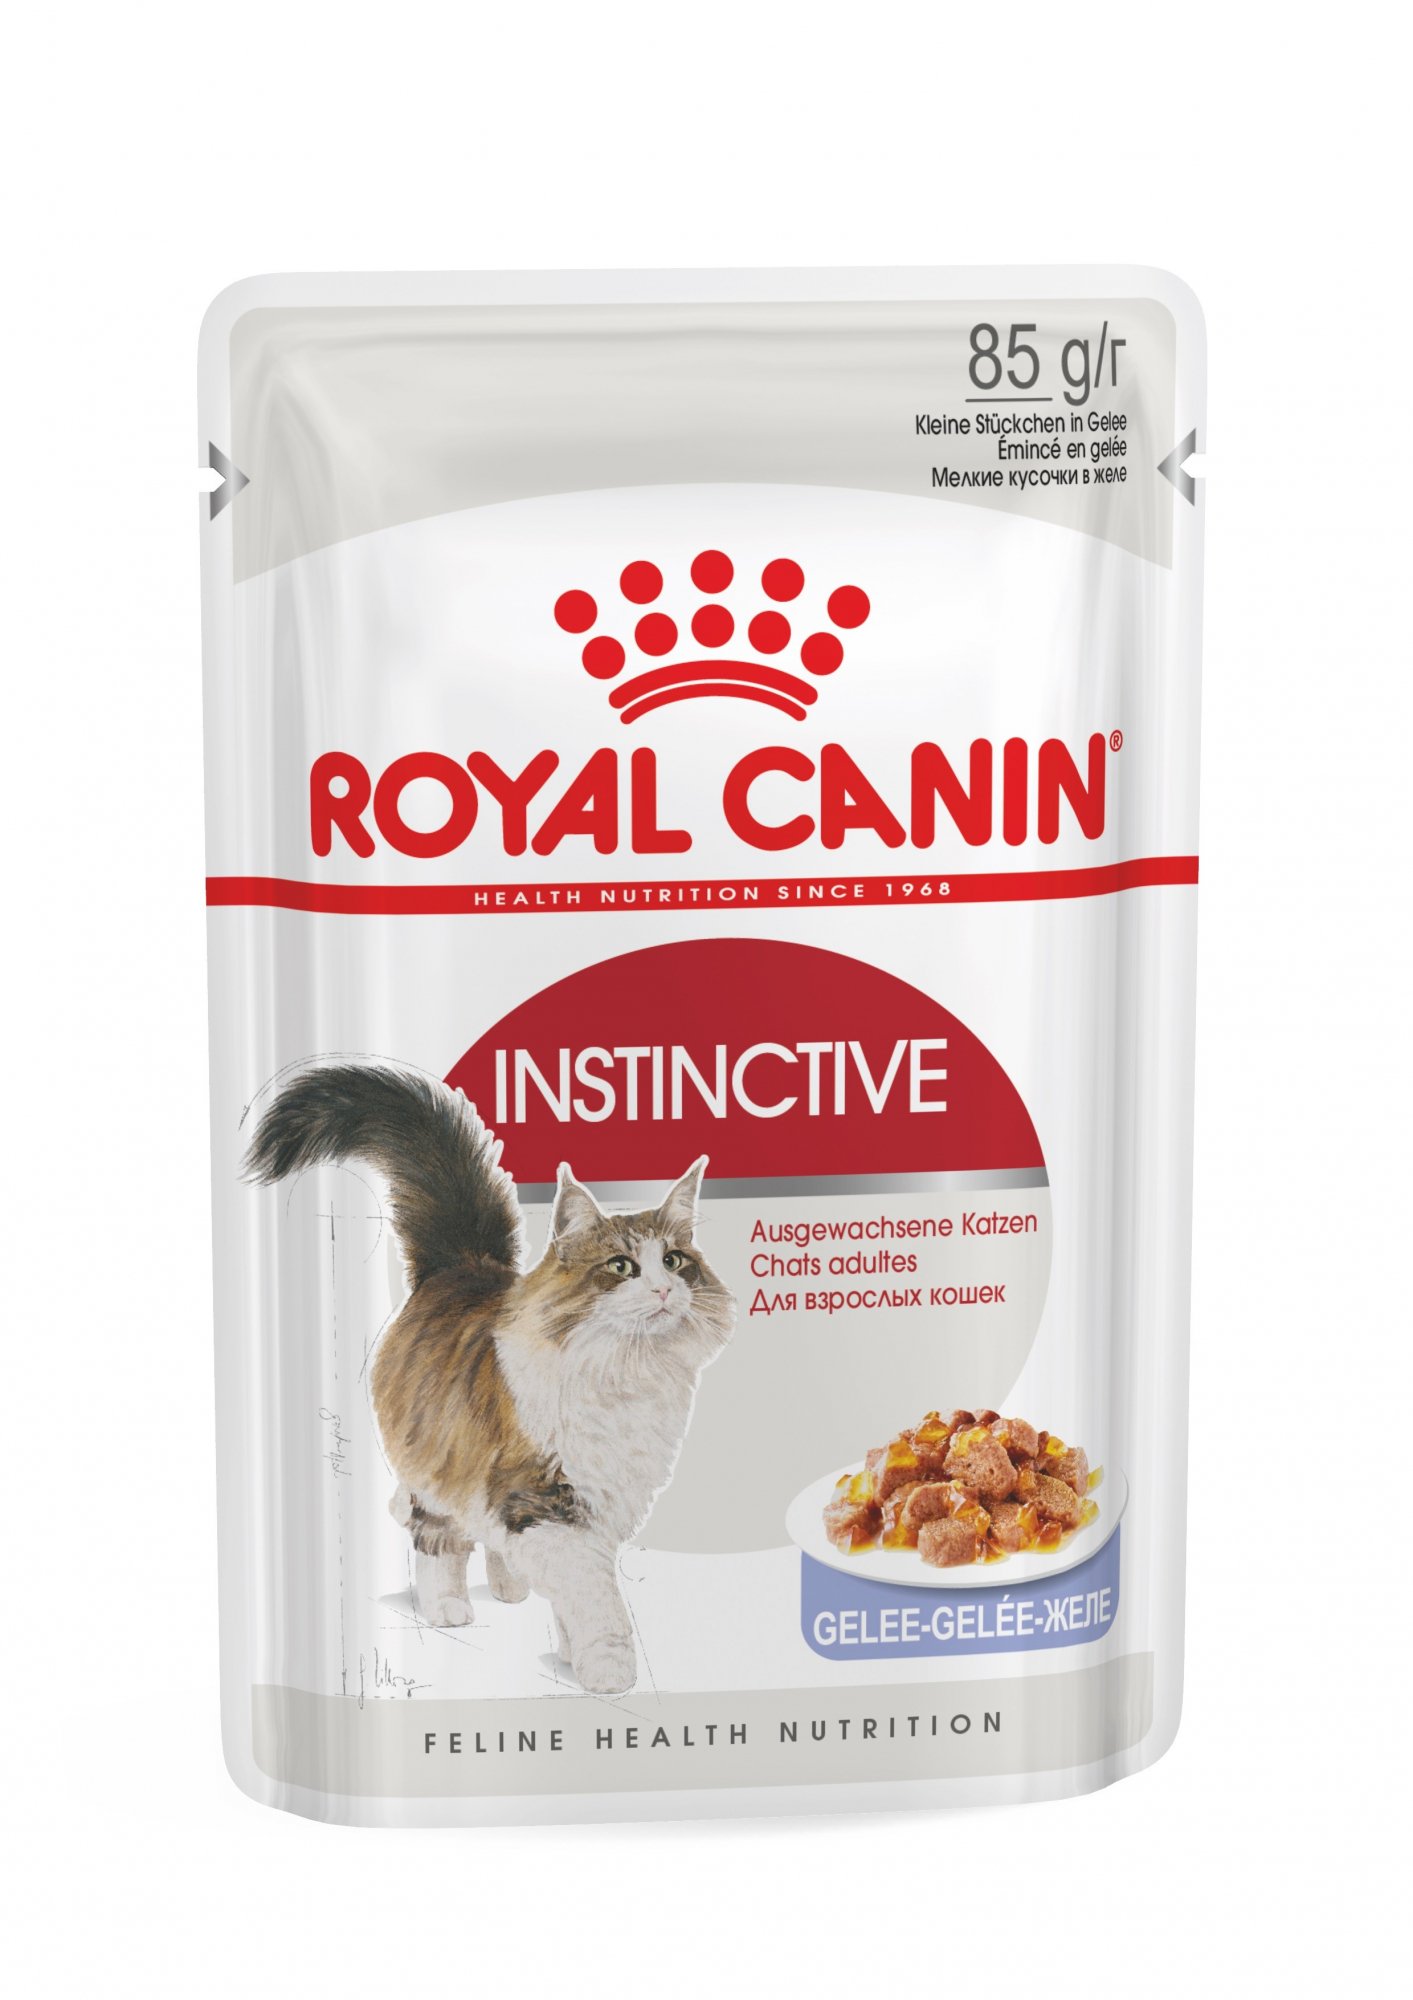 Royal Canin Instinctive Patê em geleia para gatos